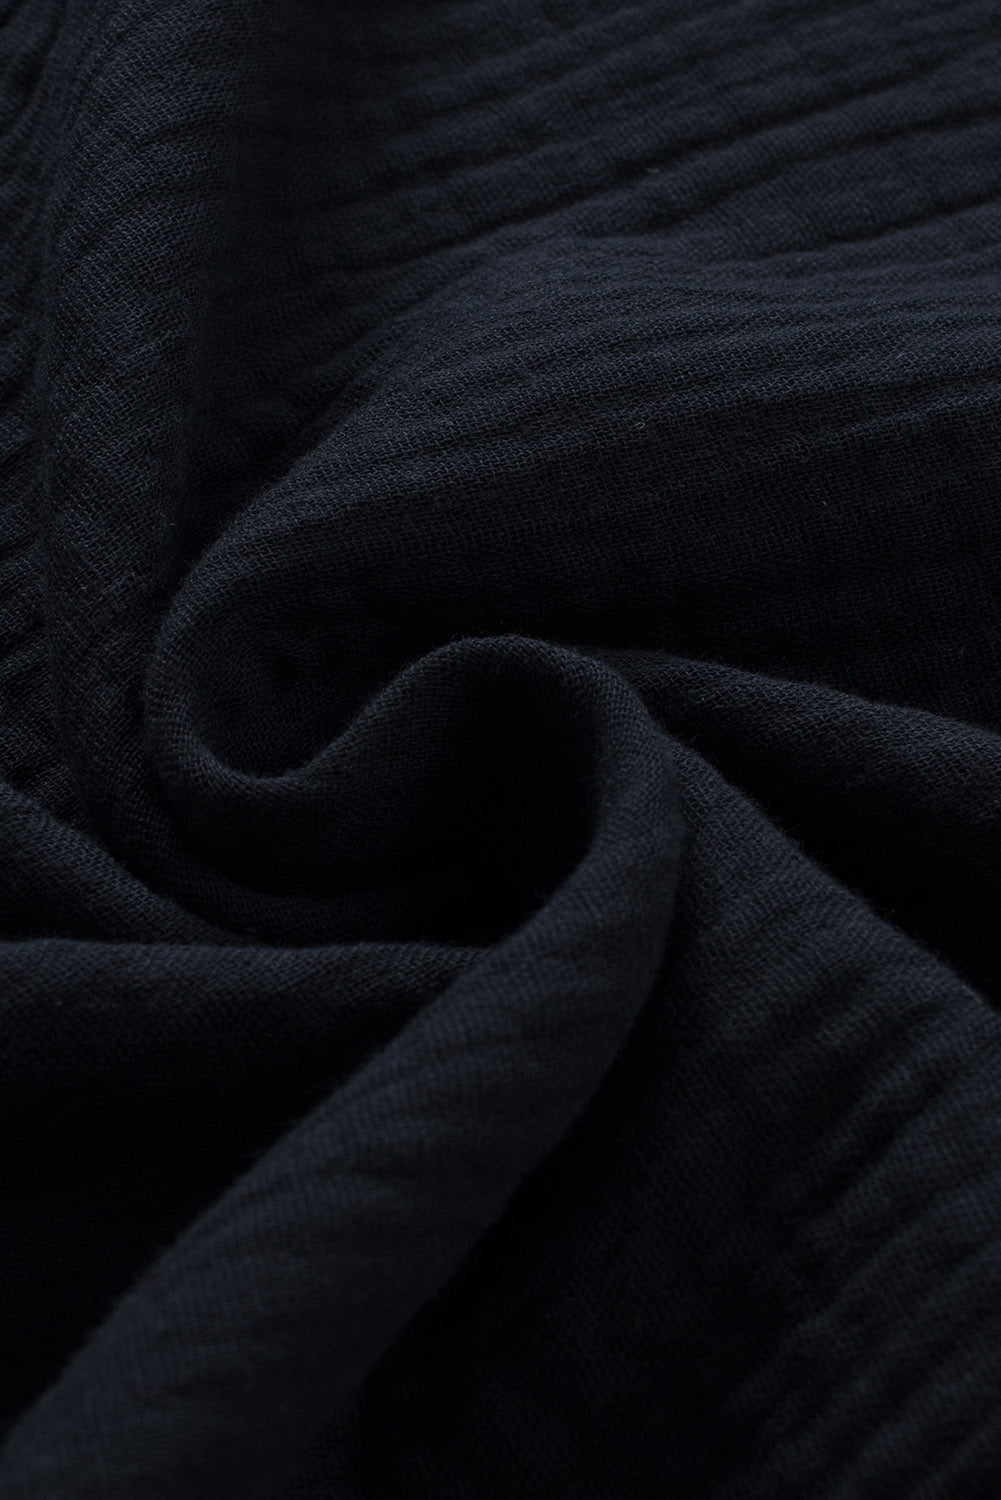 Crna teksturirana bluza kratkih rukava s volanima